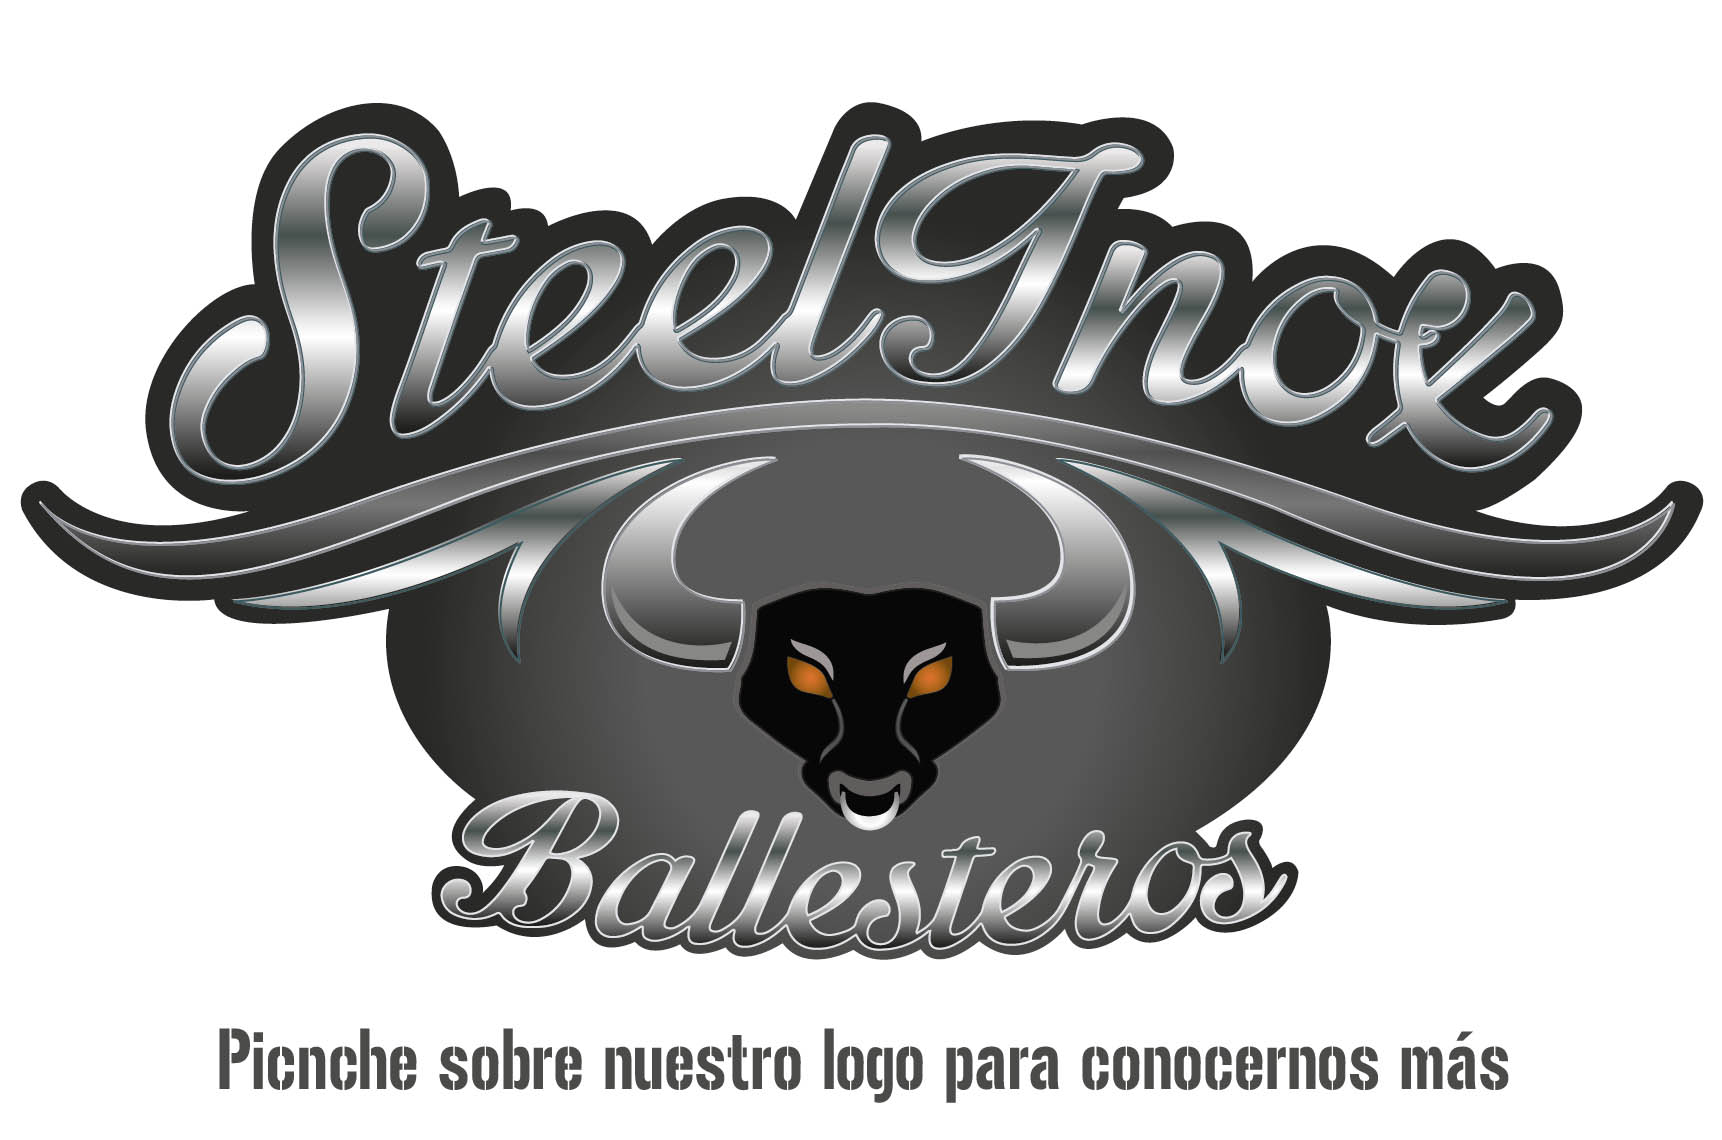 Steelinox Ballesteros